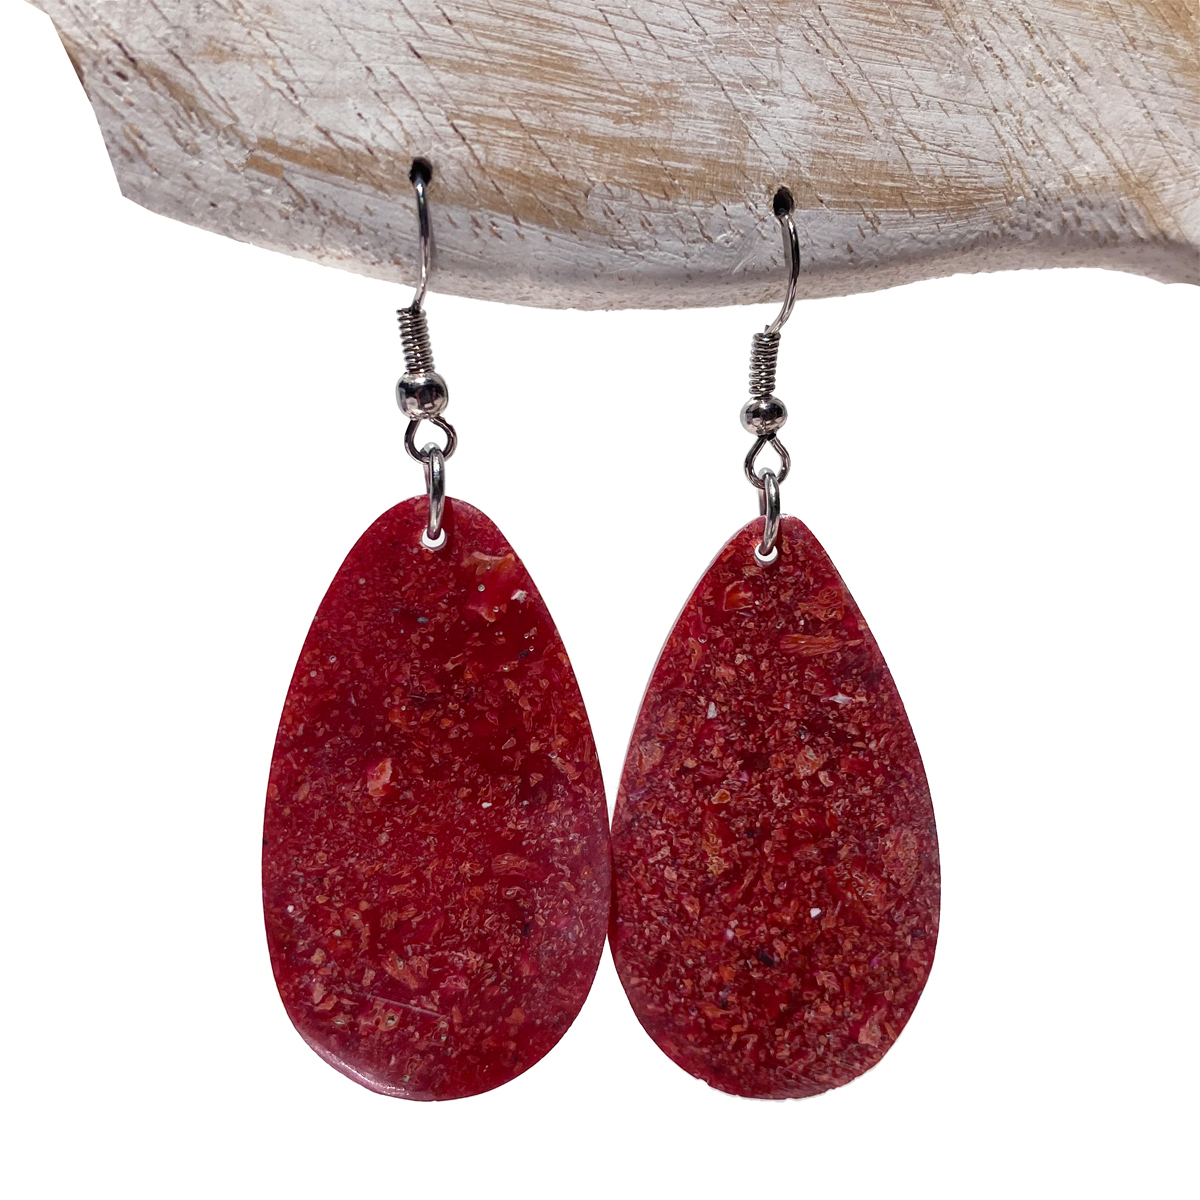 Boucles d'oreilles originales pendants en forme de gouttes en corail rouge et résine artisanat de Bali